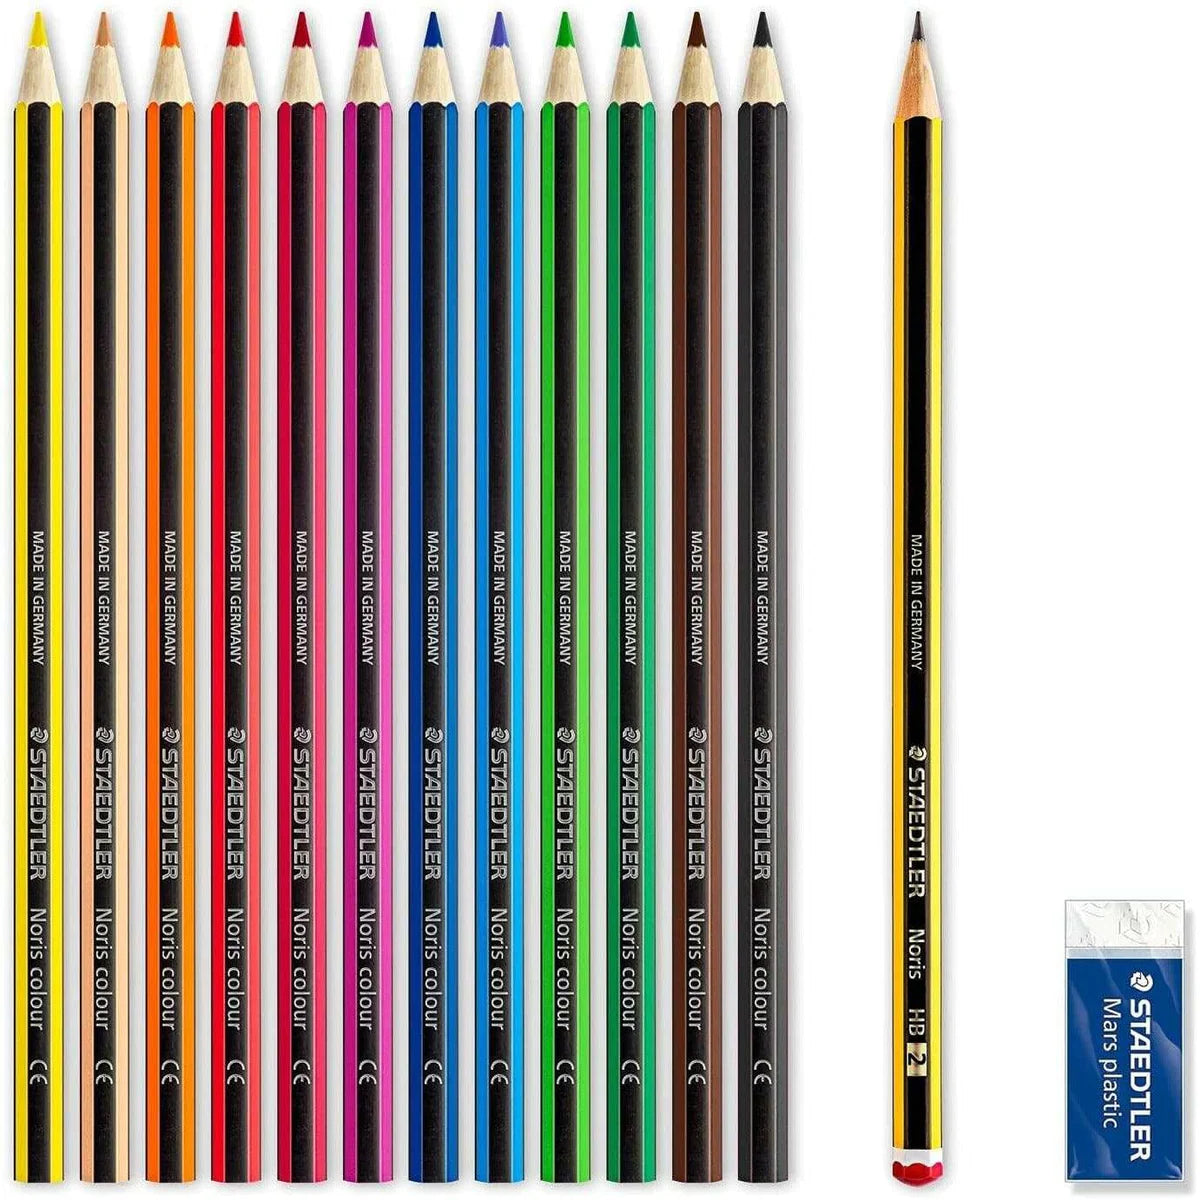 مجموعة أقلام تلوين ستيدلر نوريس كلوب 12 قلم تلوين